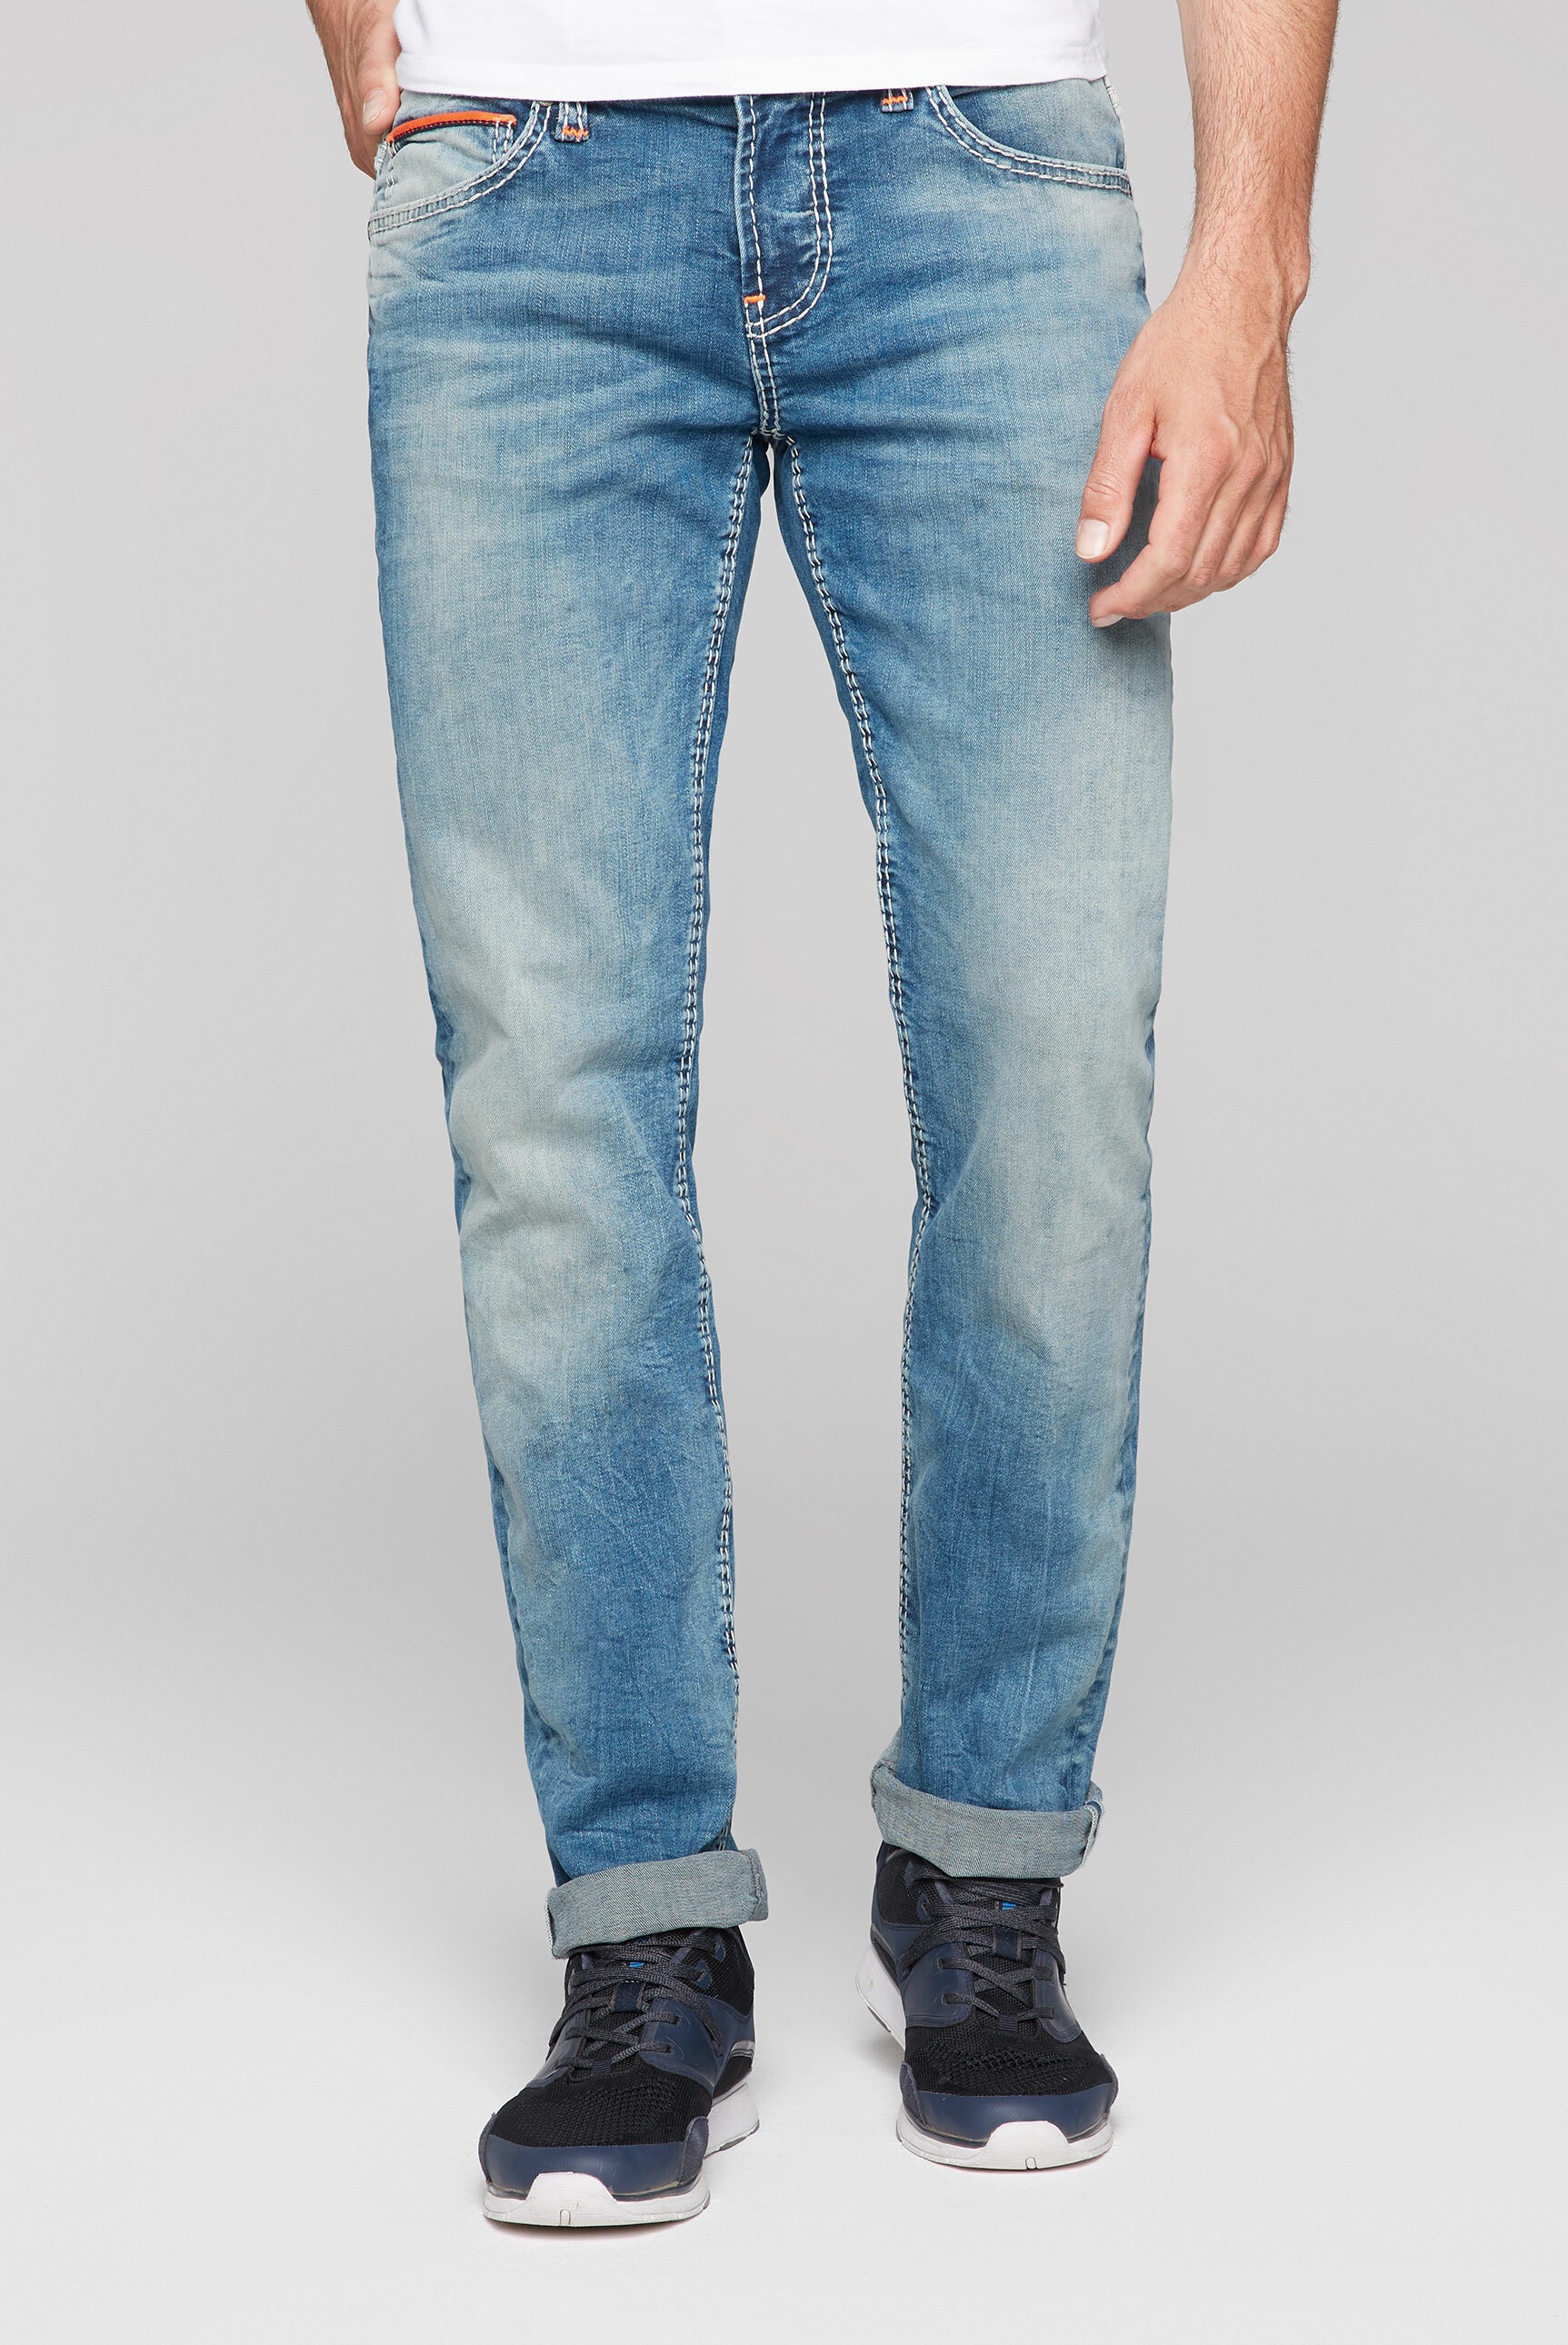 CAMP DAVID Regular-fit-Jeans, mit niedriger Leibhöhe kaufen